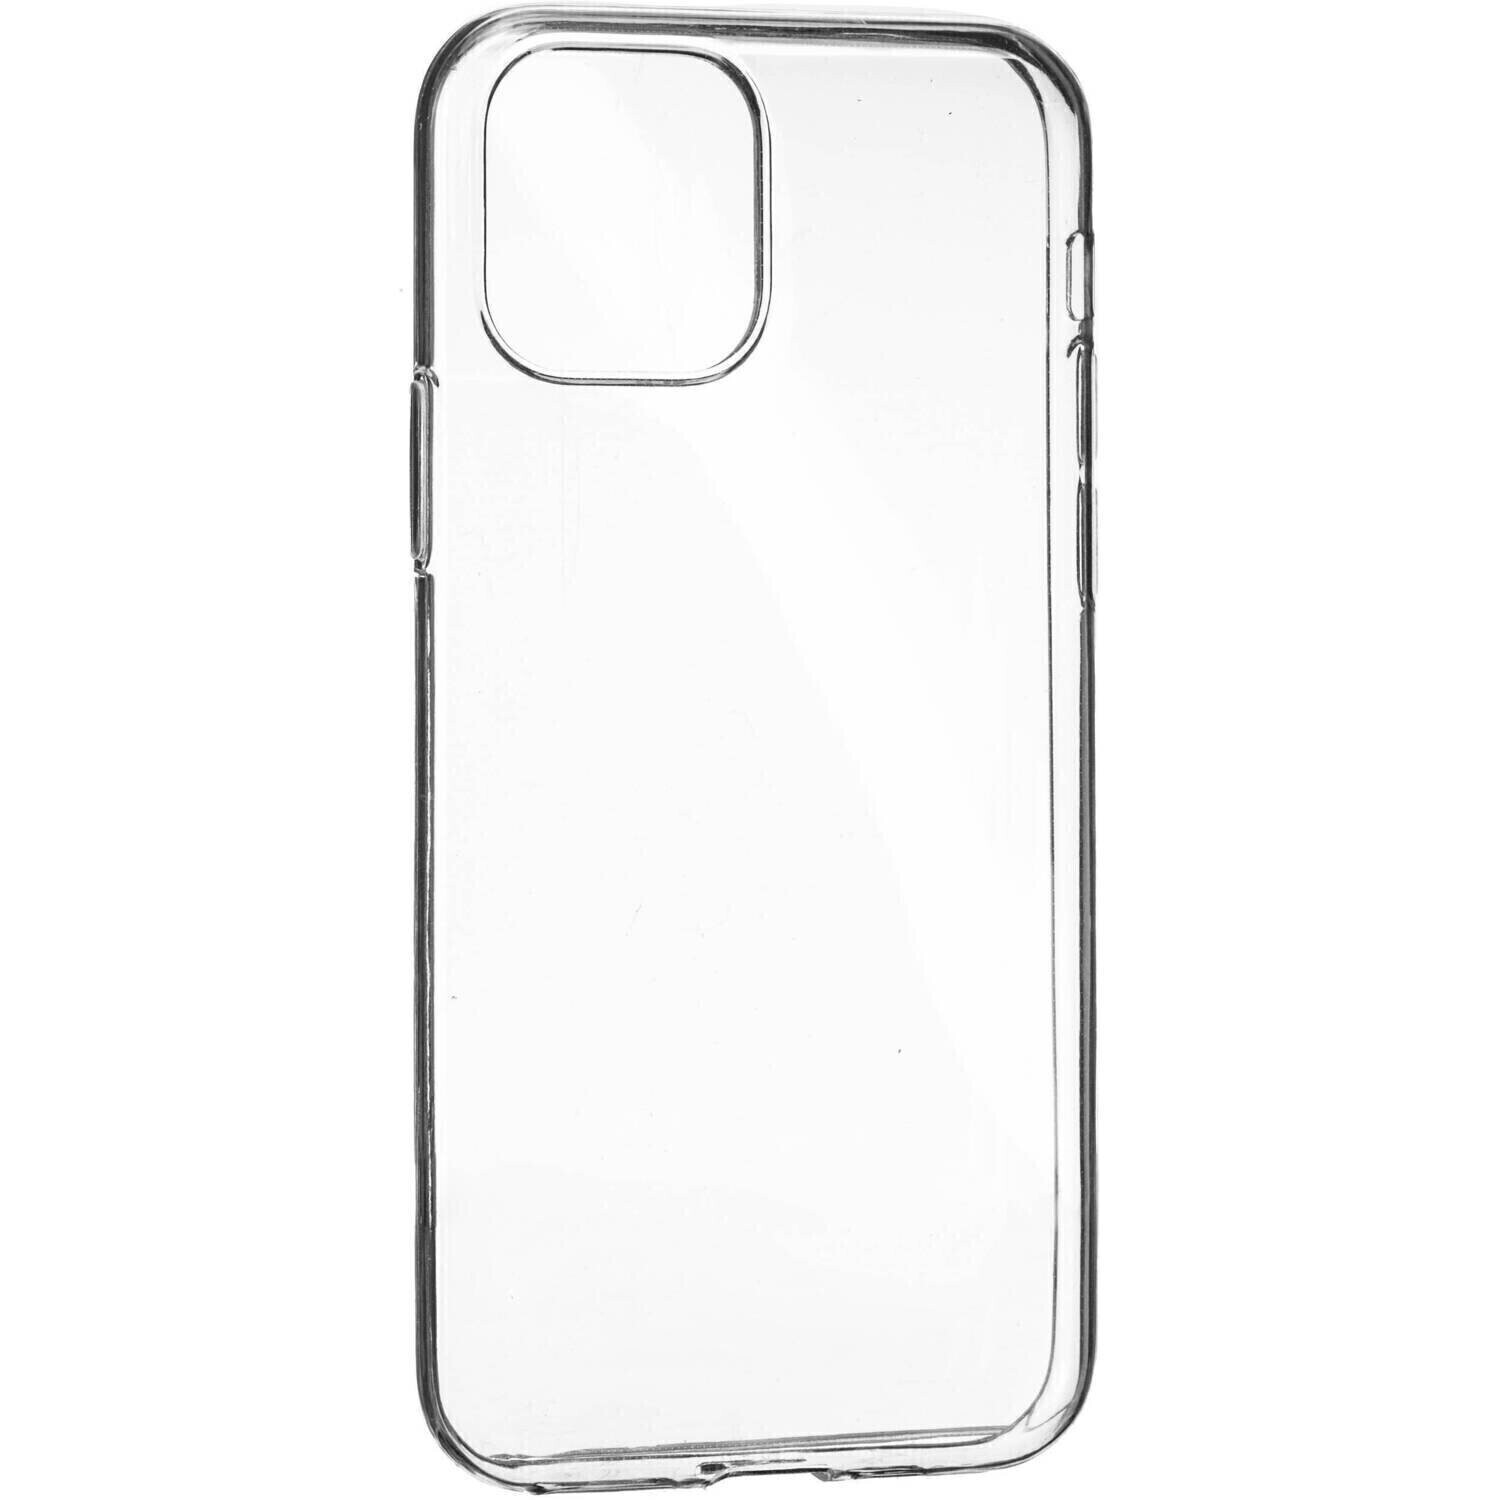 Komass iPhone 11 6.1" Soft Case, Clear